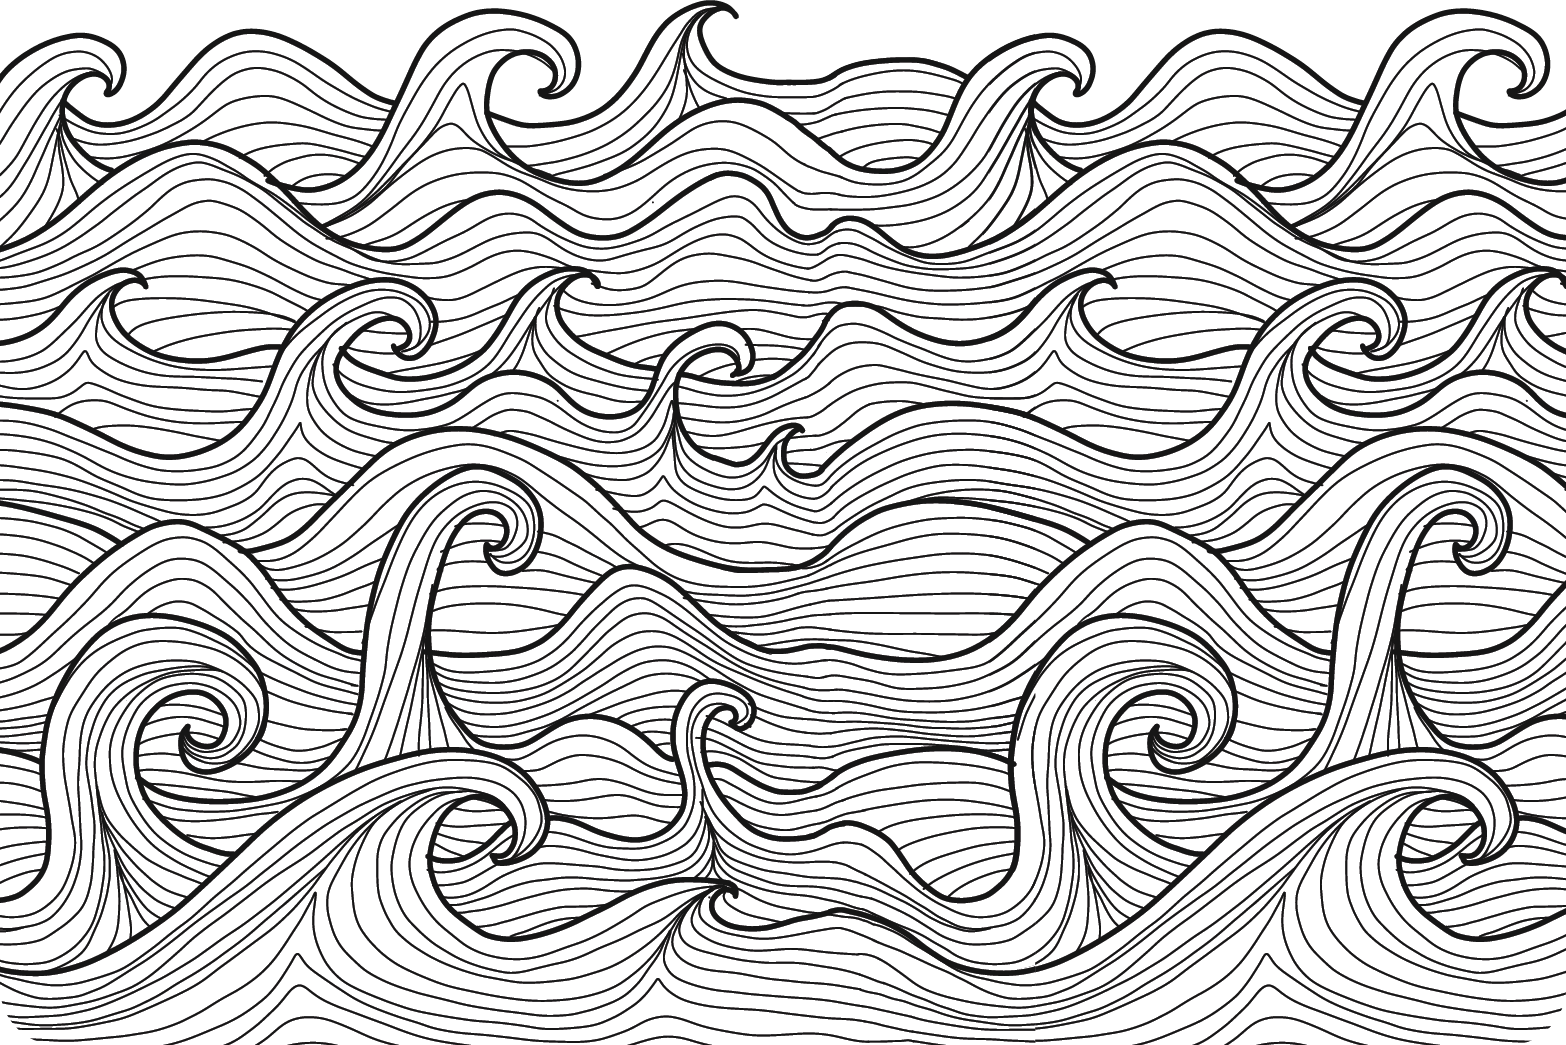 Ilustração de um mar com ondas pontudas feitas com linhas finas e onduladas.